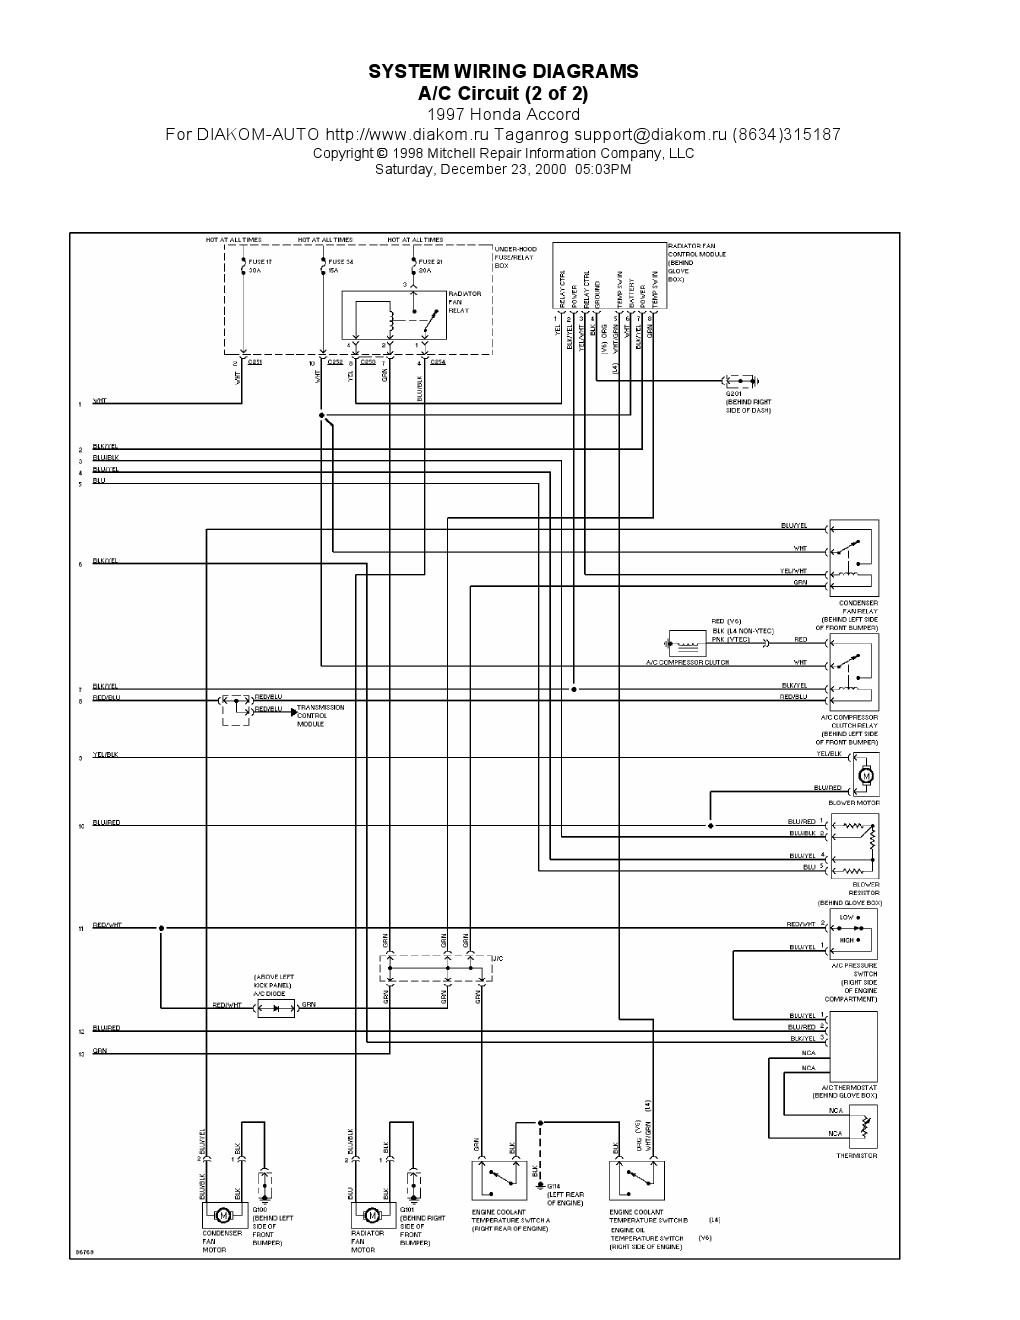 Air Conditioner Wiring Diagram Pdf 1998 Honda Accord Wiring Diagram Pdf Wiring Diagram Directory